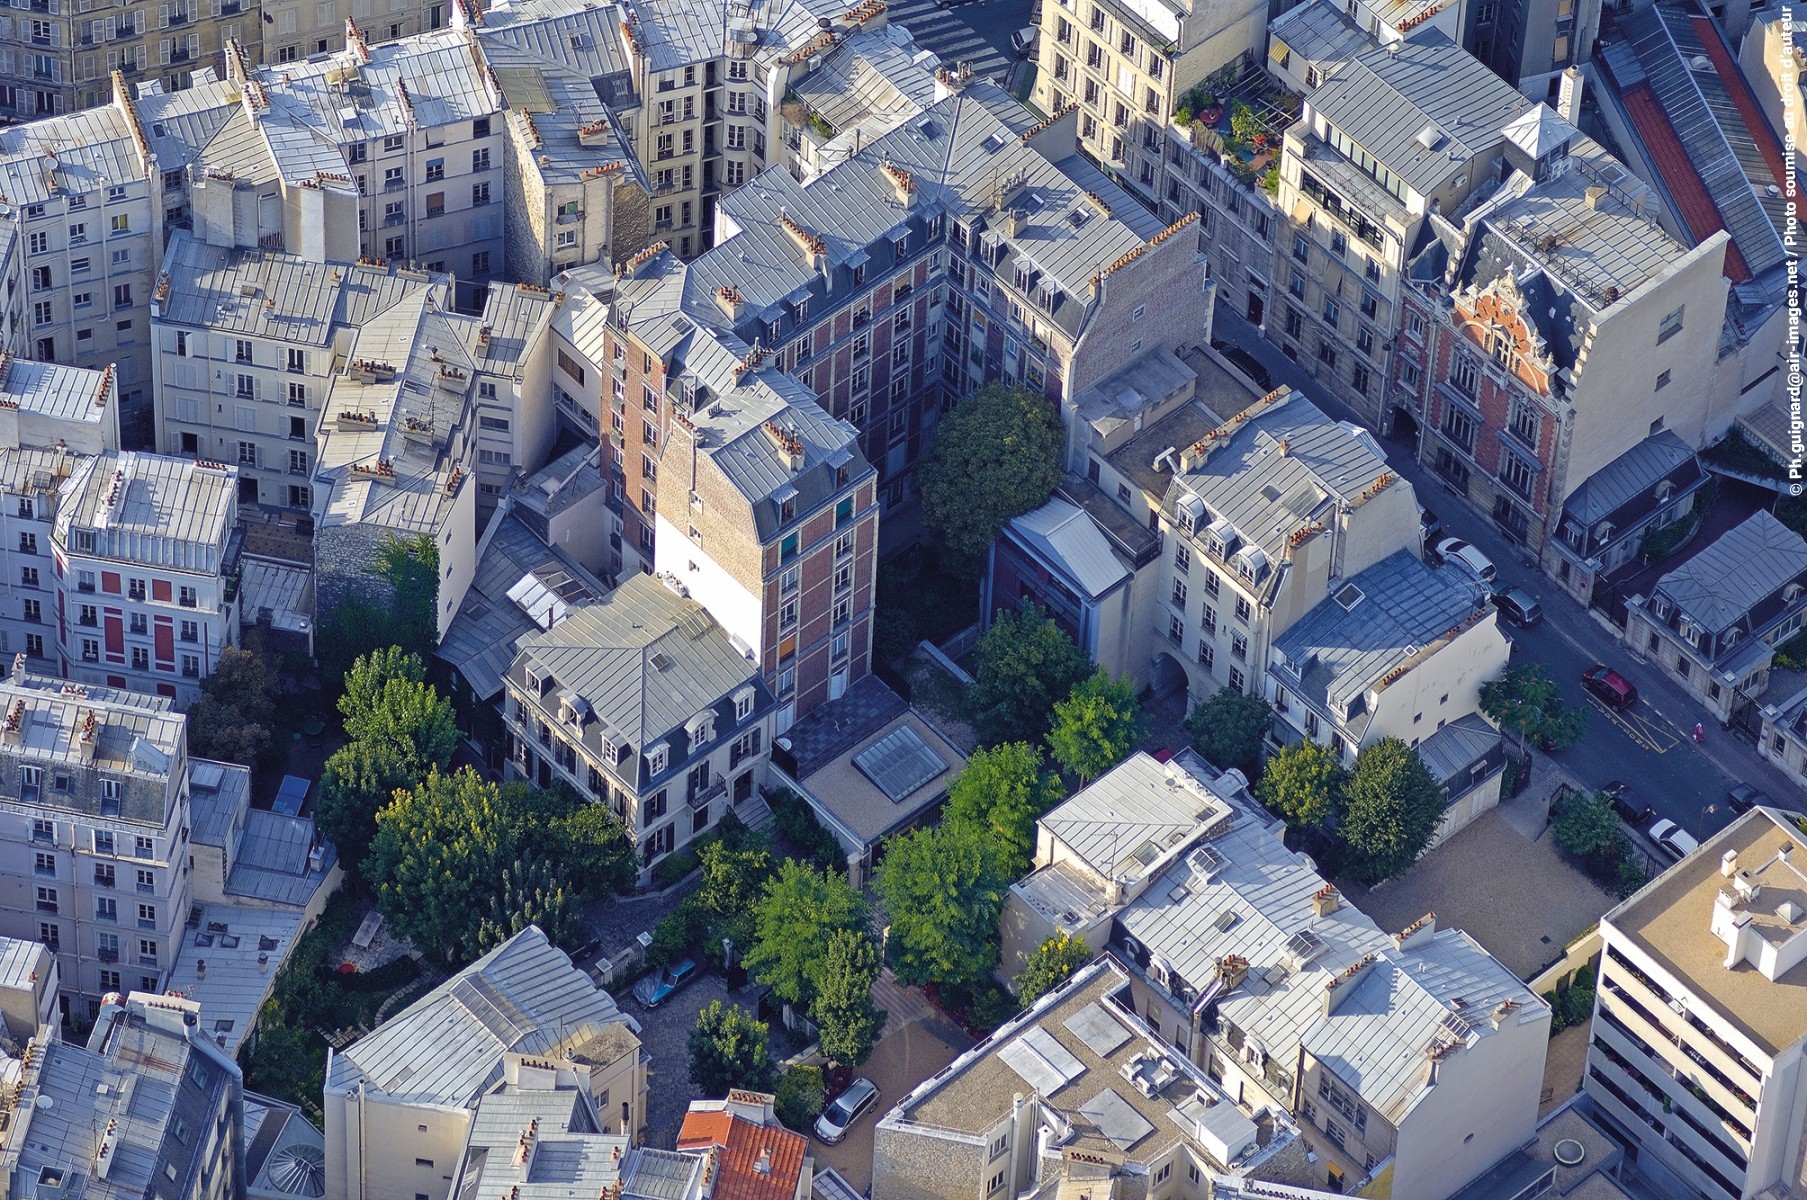 Vue sur des toits d'immeubles parisiens © Ph.guignard@air-images.net